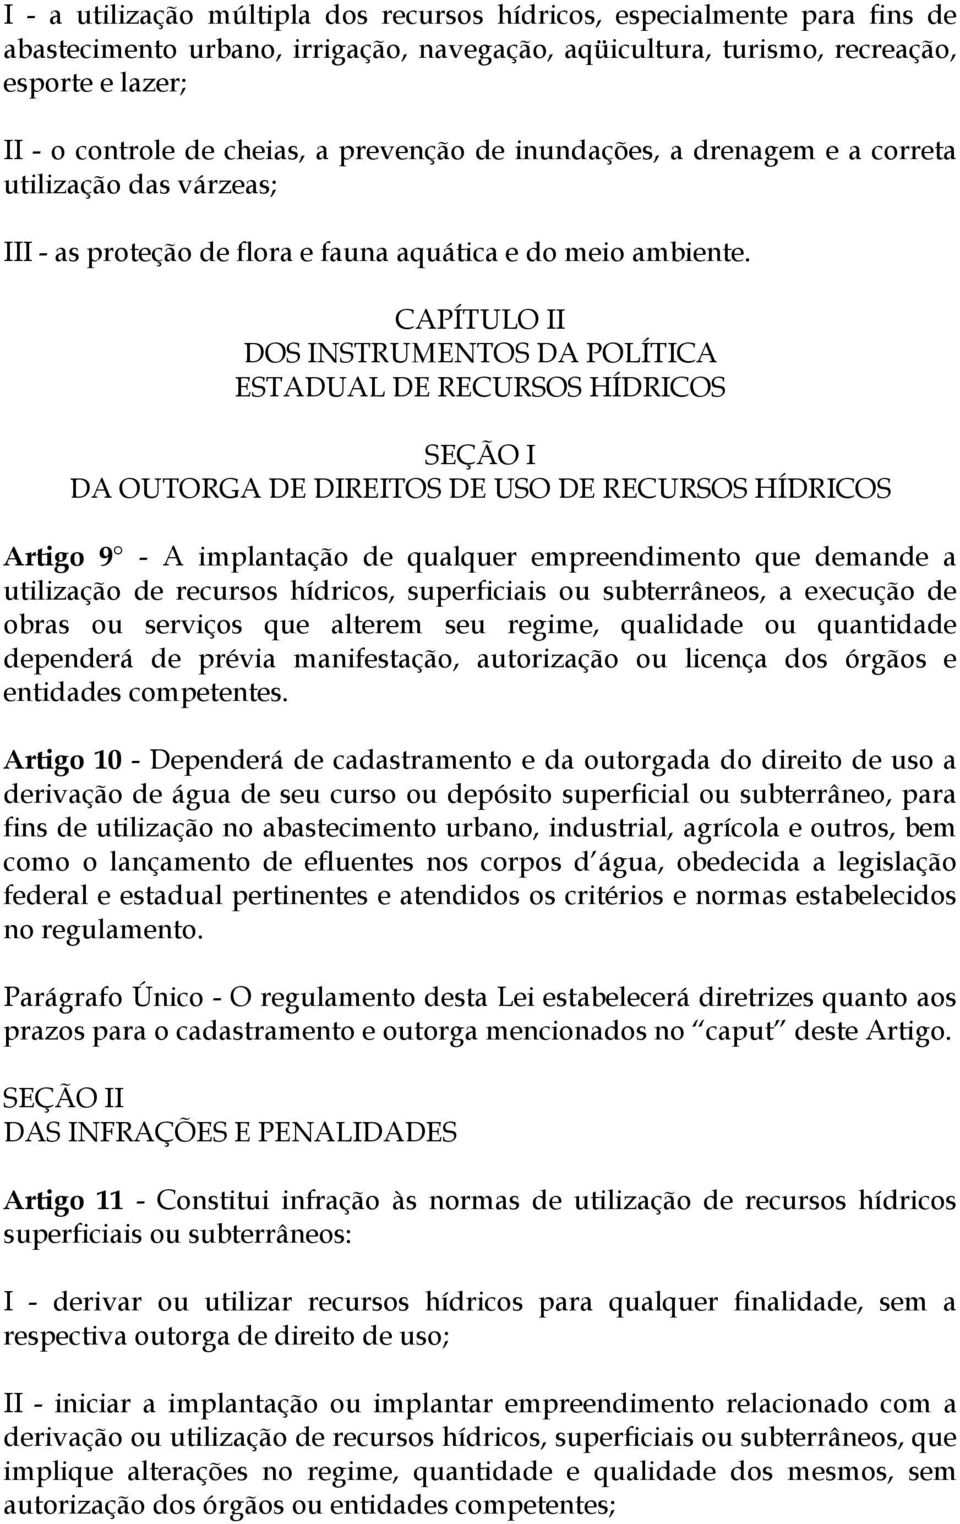 CAPÍTULO II DOS INSTRUMENTOS DA POLÍTICA ESTADUAL DE RECURSOS HÍDRICOS SEÇÃO I DA OUTORGA DE DIREITOS DE USO DE RECURSOS HÍDRICOS Artigo 9 - A implantação de qualquer empreendimento que demande a